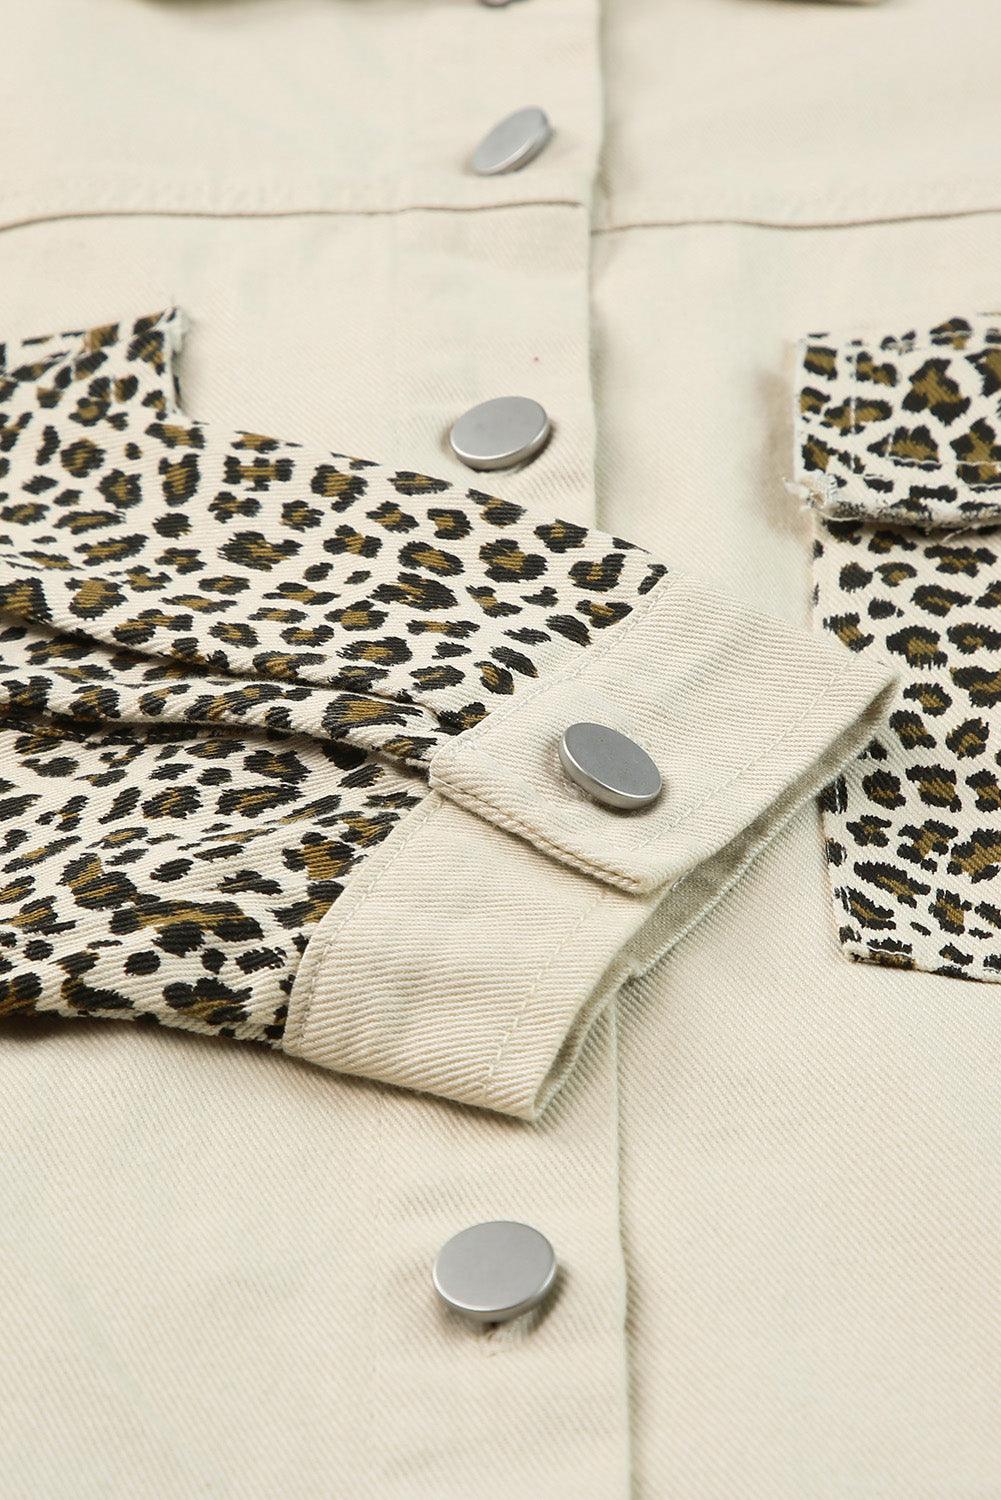 Apricot Plus Size Leopard Sleeve Raw Hem Denim Jacket - L & M Kee, LLC